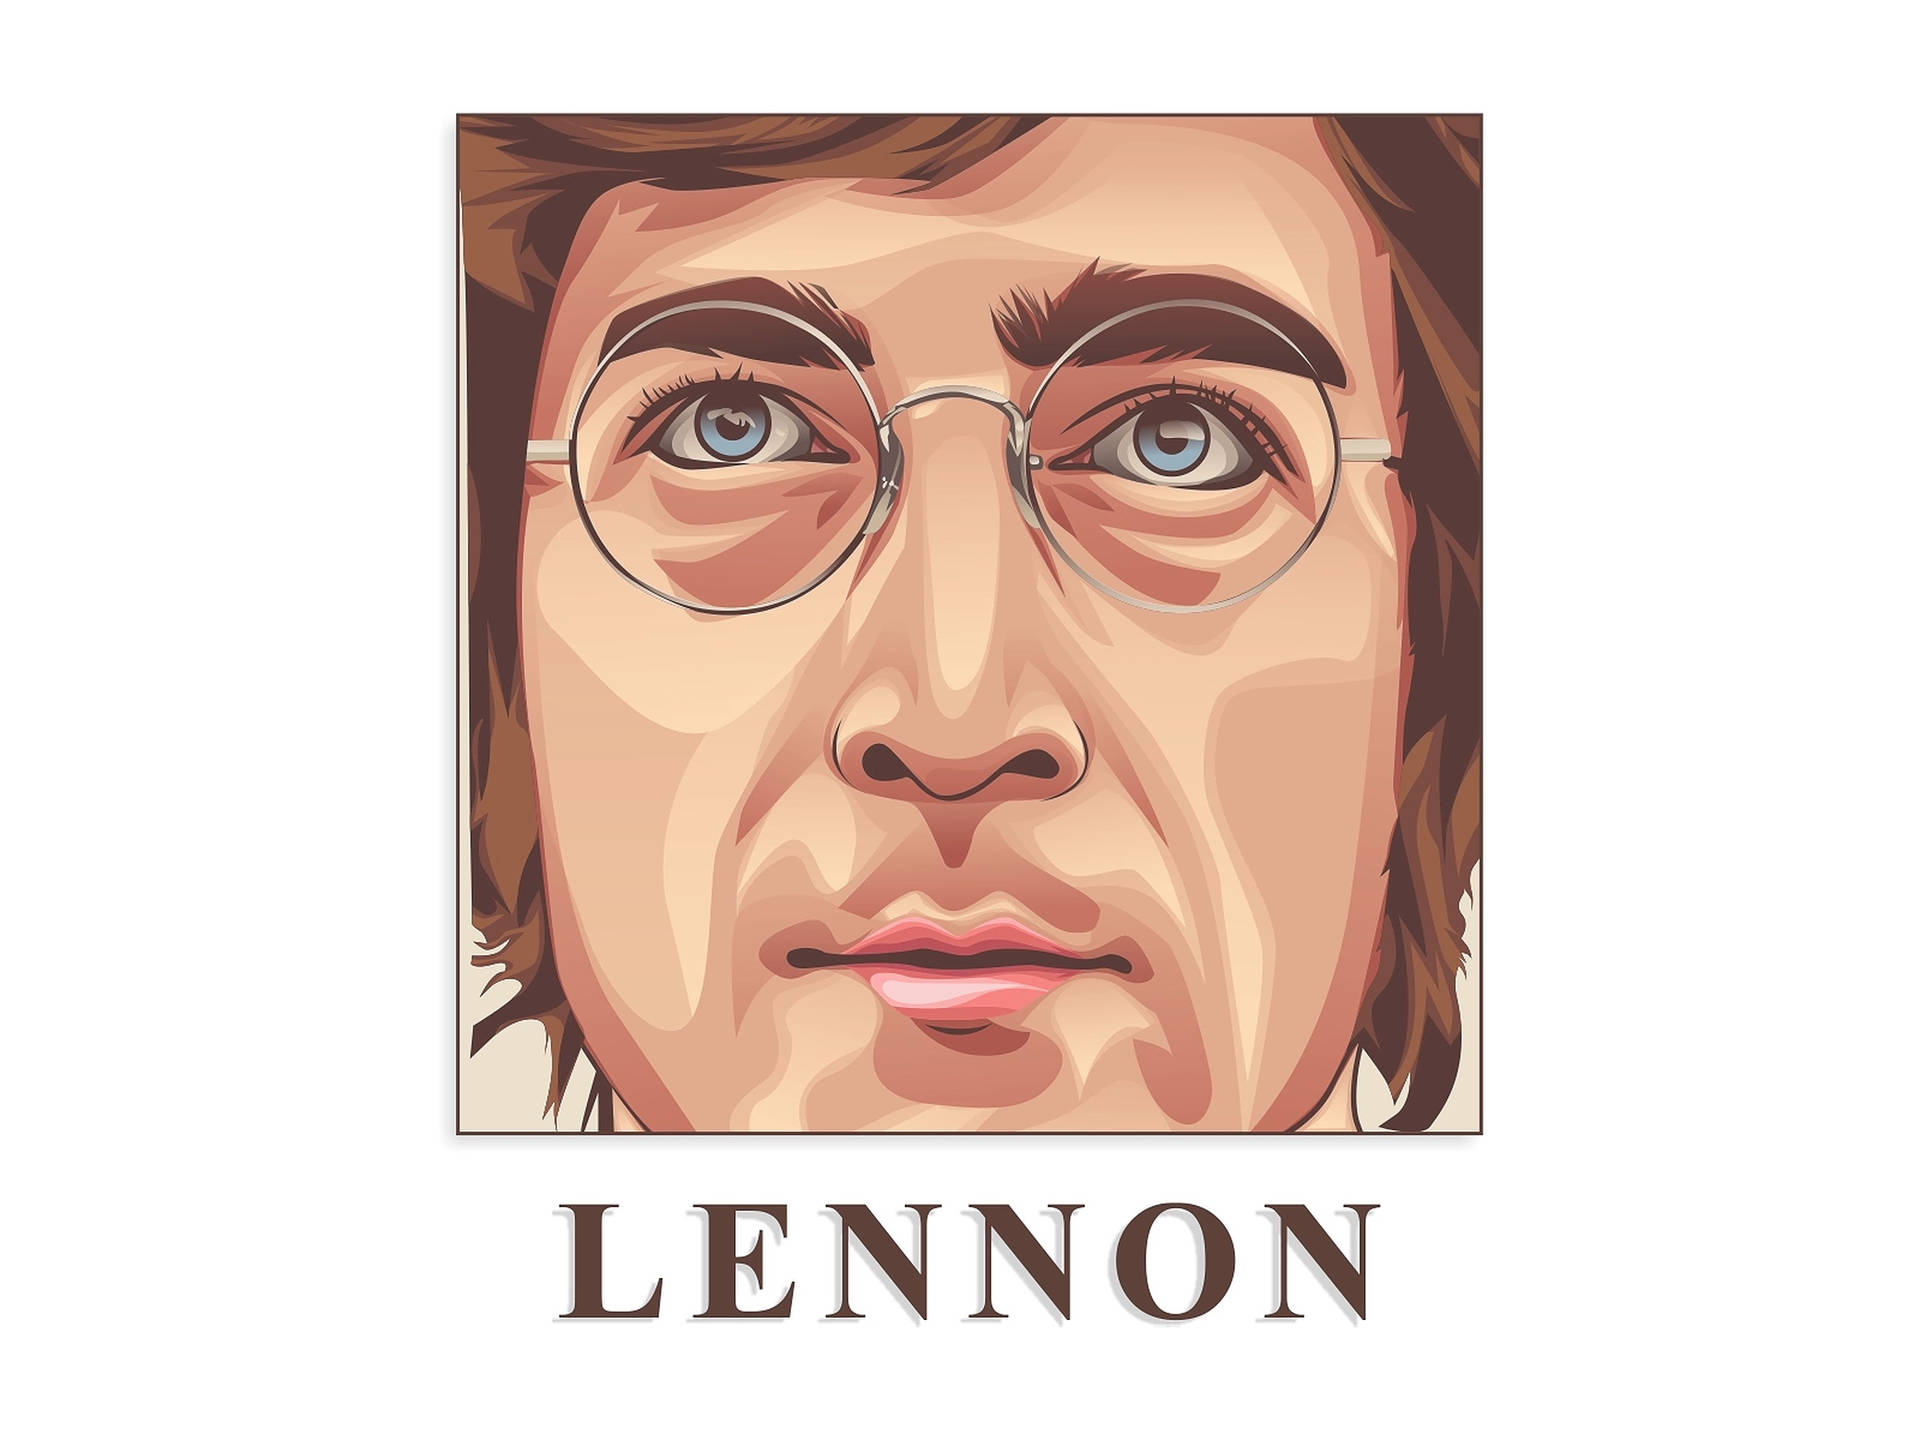 John Lennon Oil Painting Wallpaper